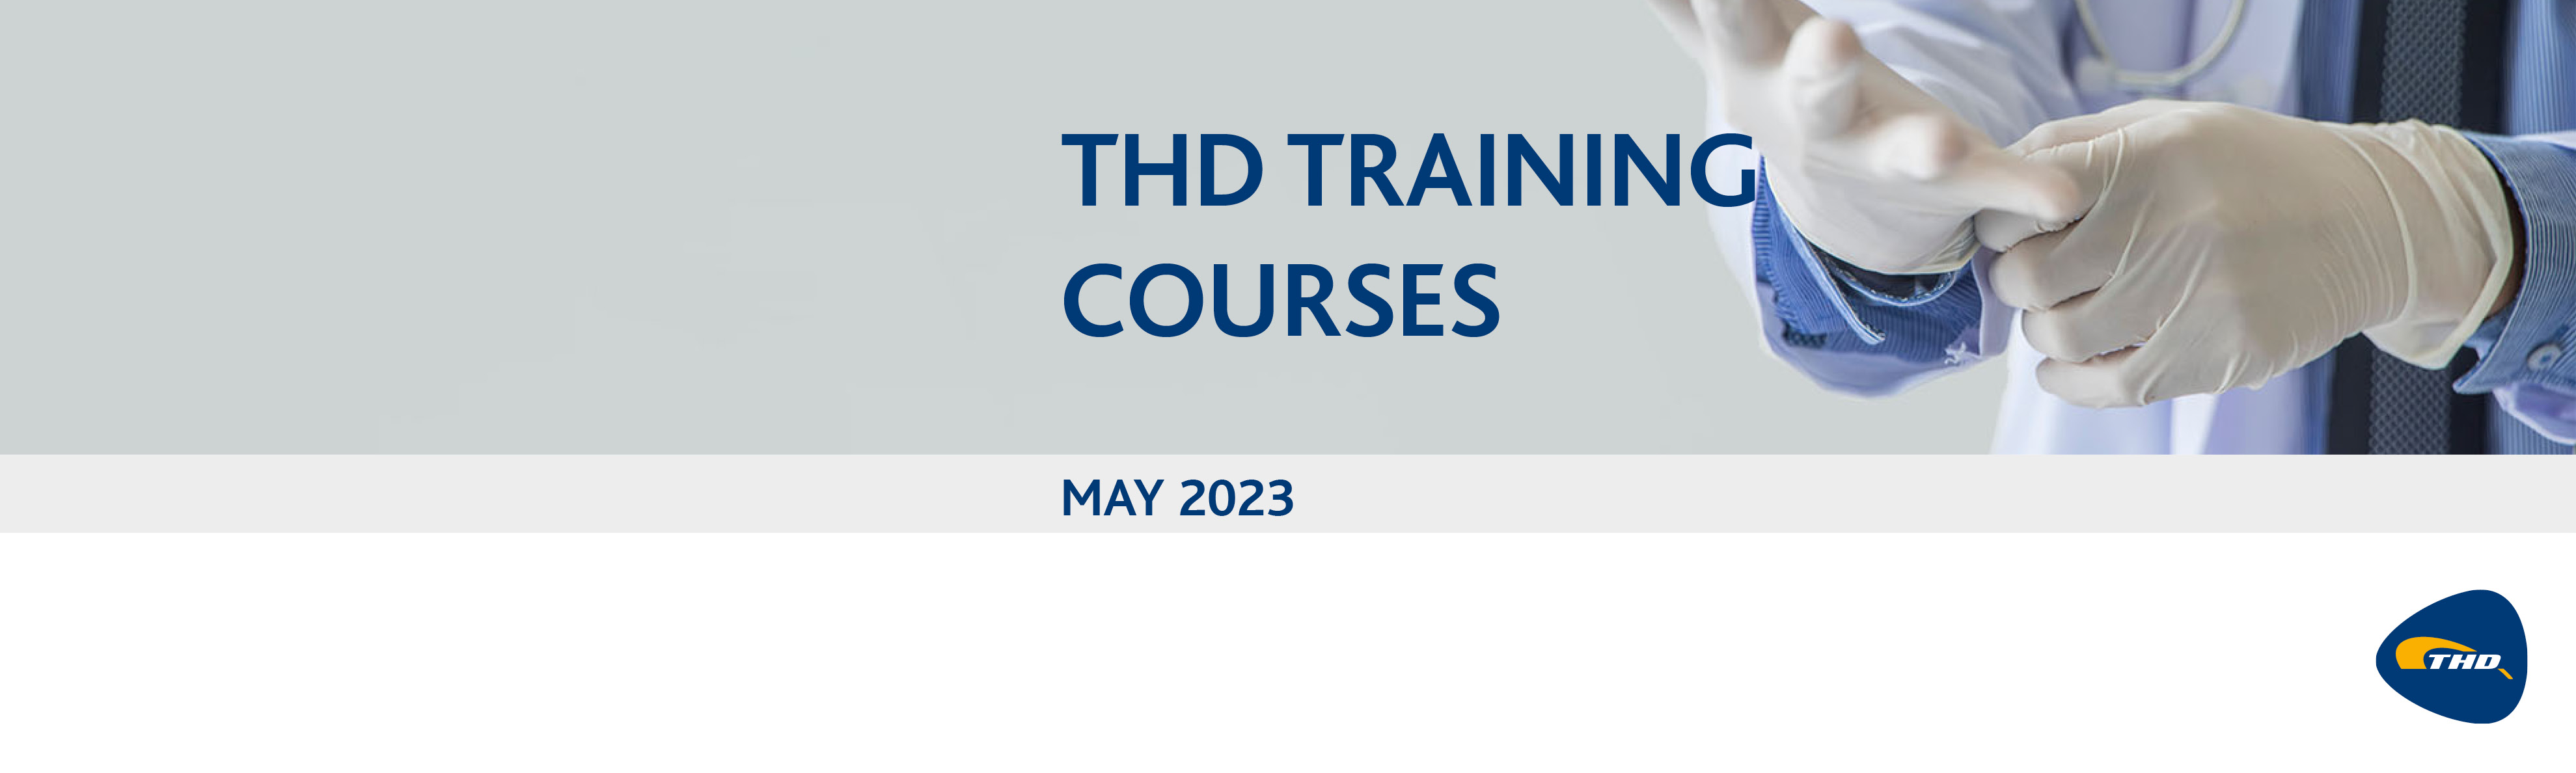 THD Webinars in May